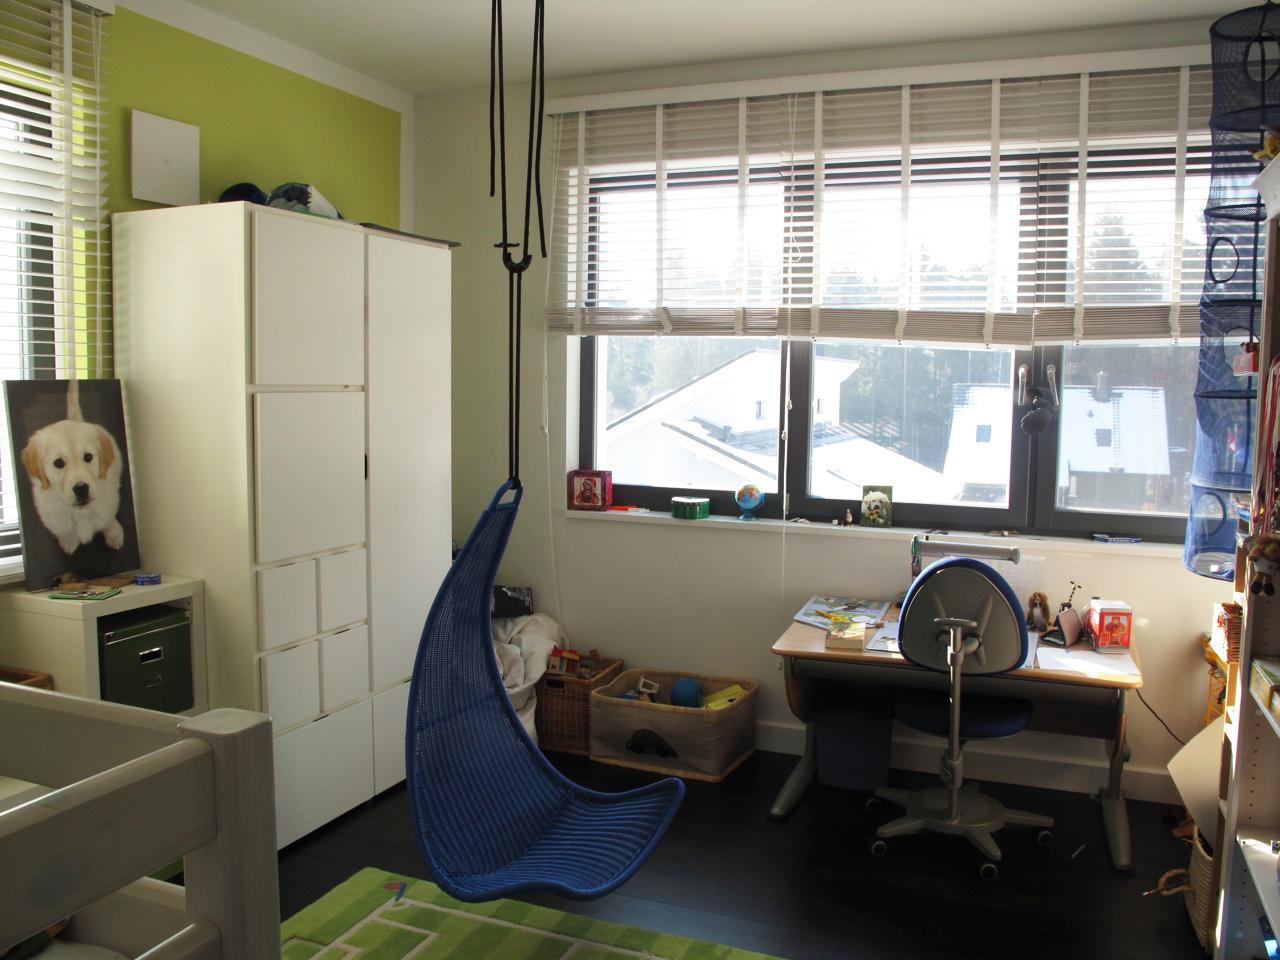 Blauer Hängesessel im Kinderzimmer #spielzimmer #hängesessel #grünewandfarbe ©scout for location